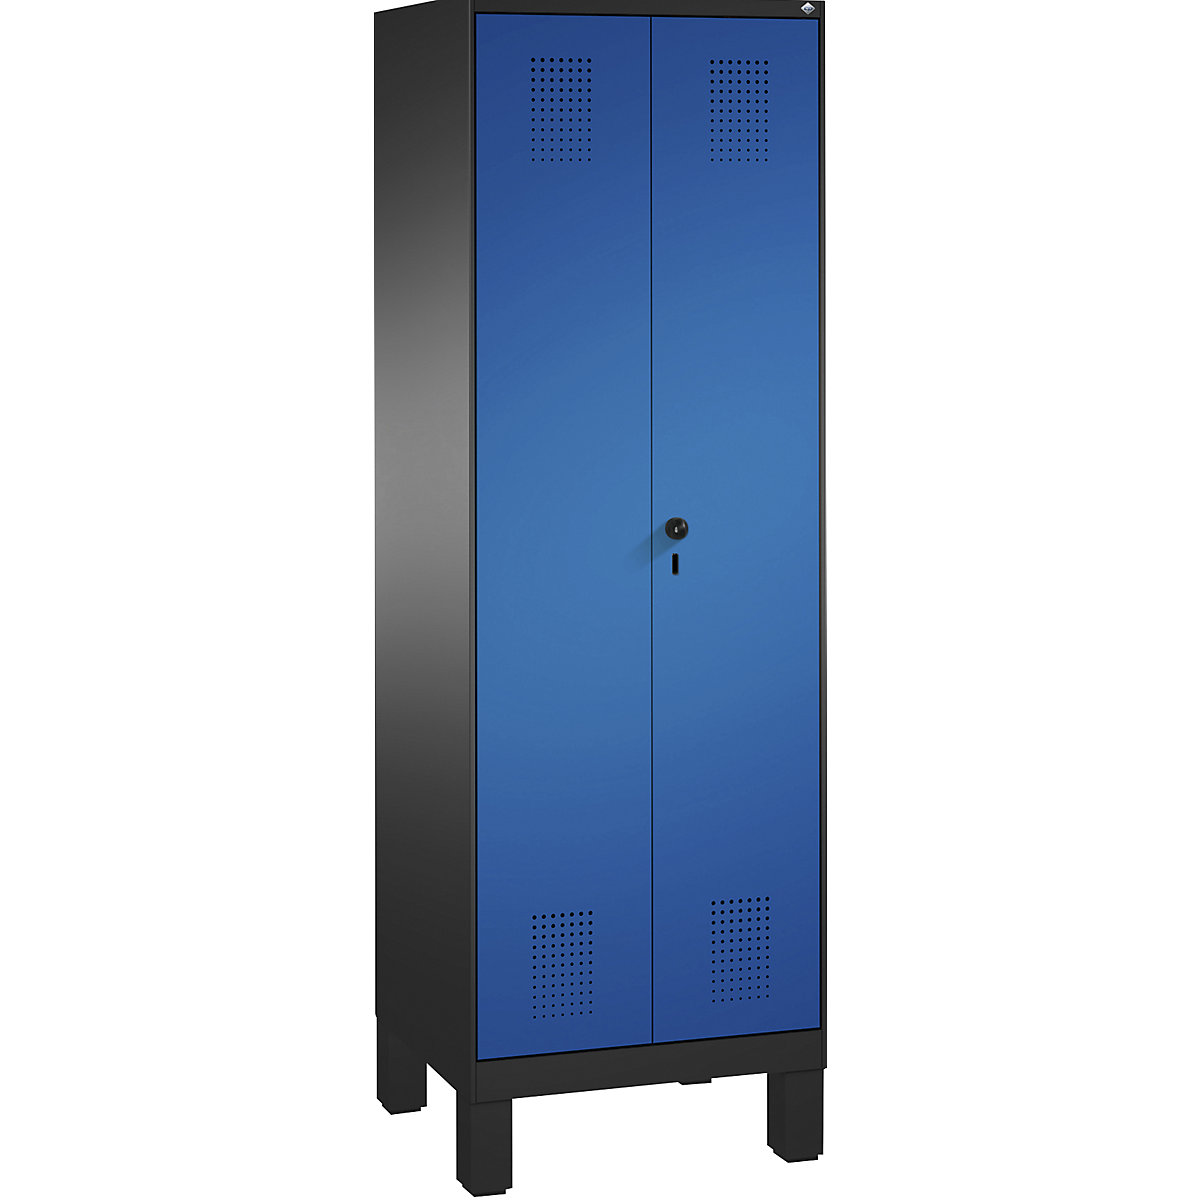 Úklidová/přístrojová skříň EVOLO – C+P, zkrácená dělicí stěna, 6 háků, oddíly 2 x 300 mm, s nohami, černošedá / enciánová modrá-14